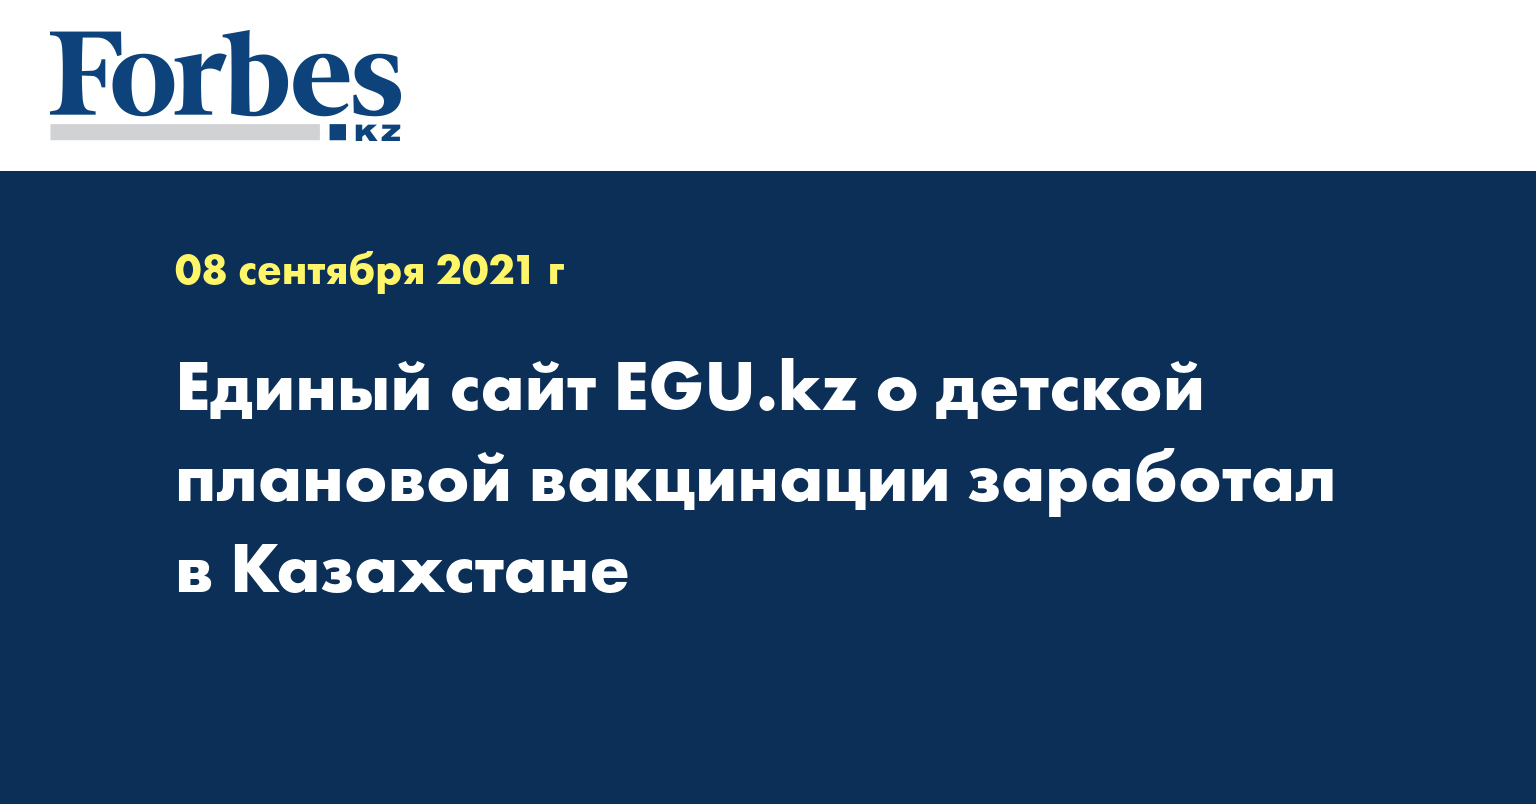 Единый сайт EGU.kz о детской плановой вакцинации заработал в Казахстане